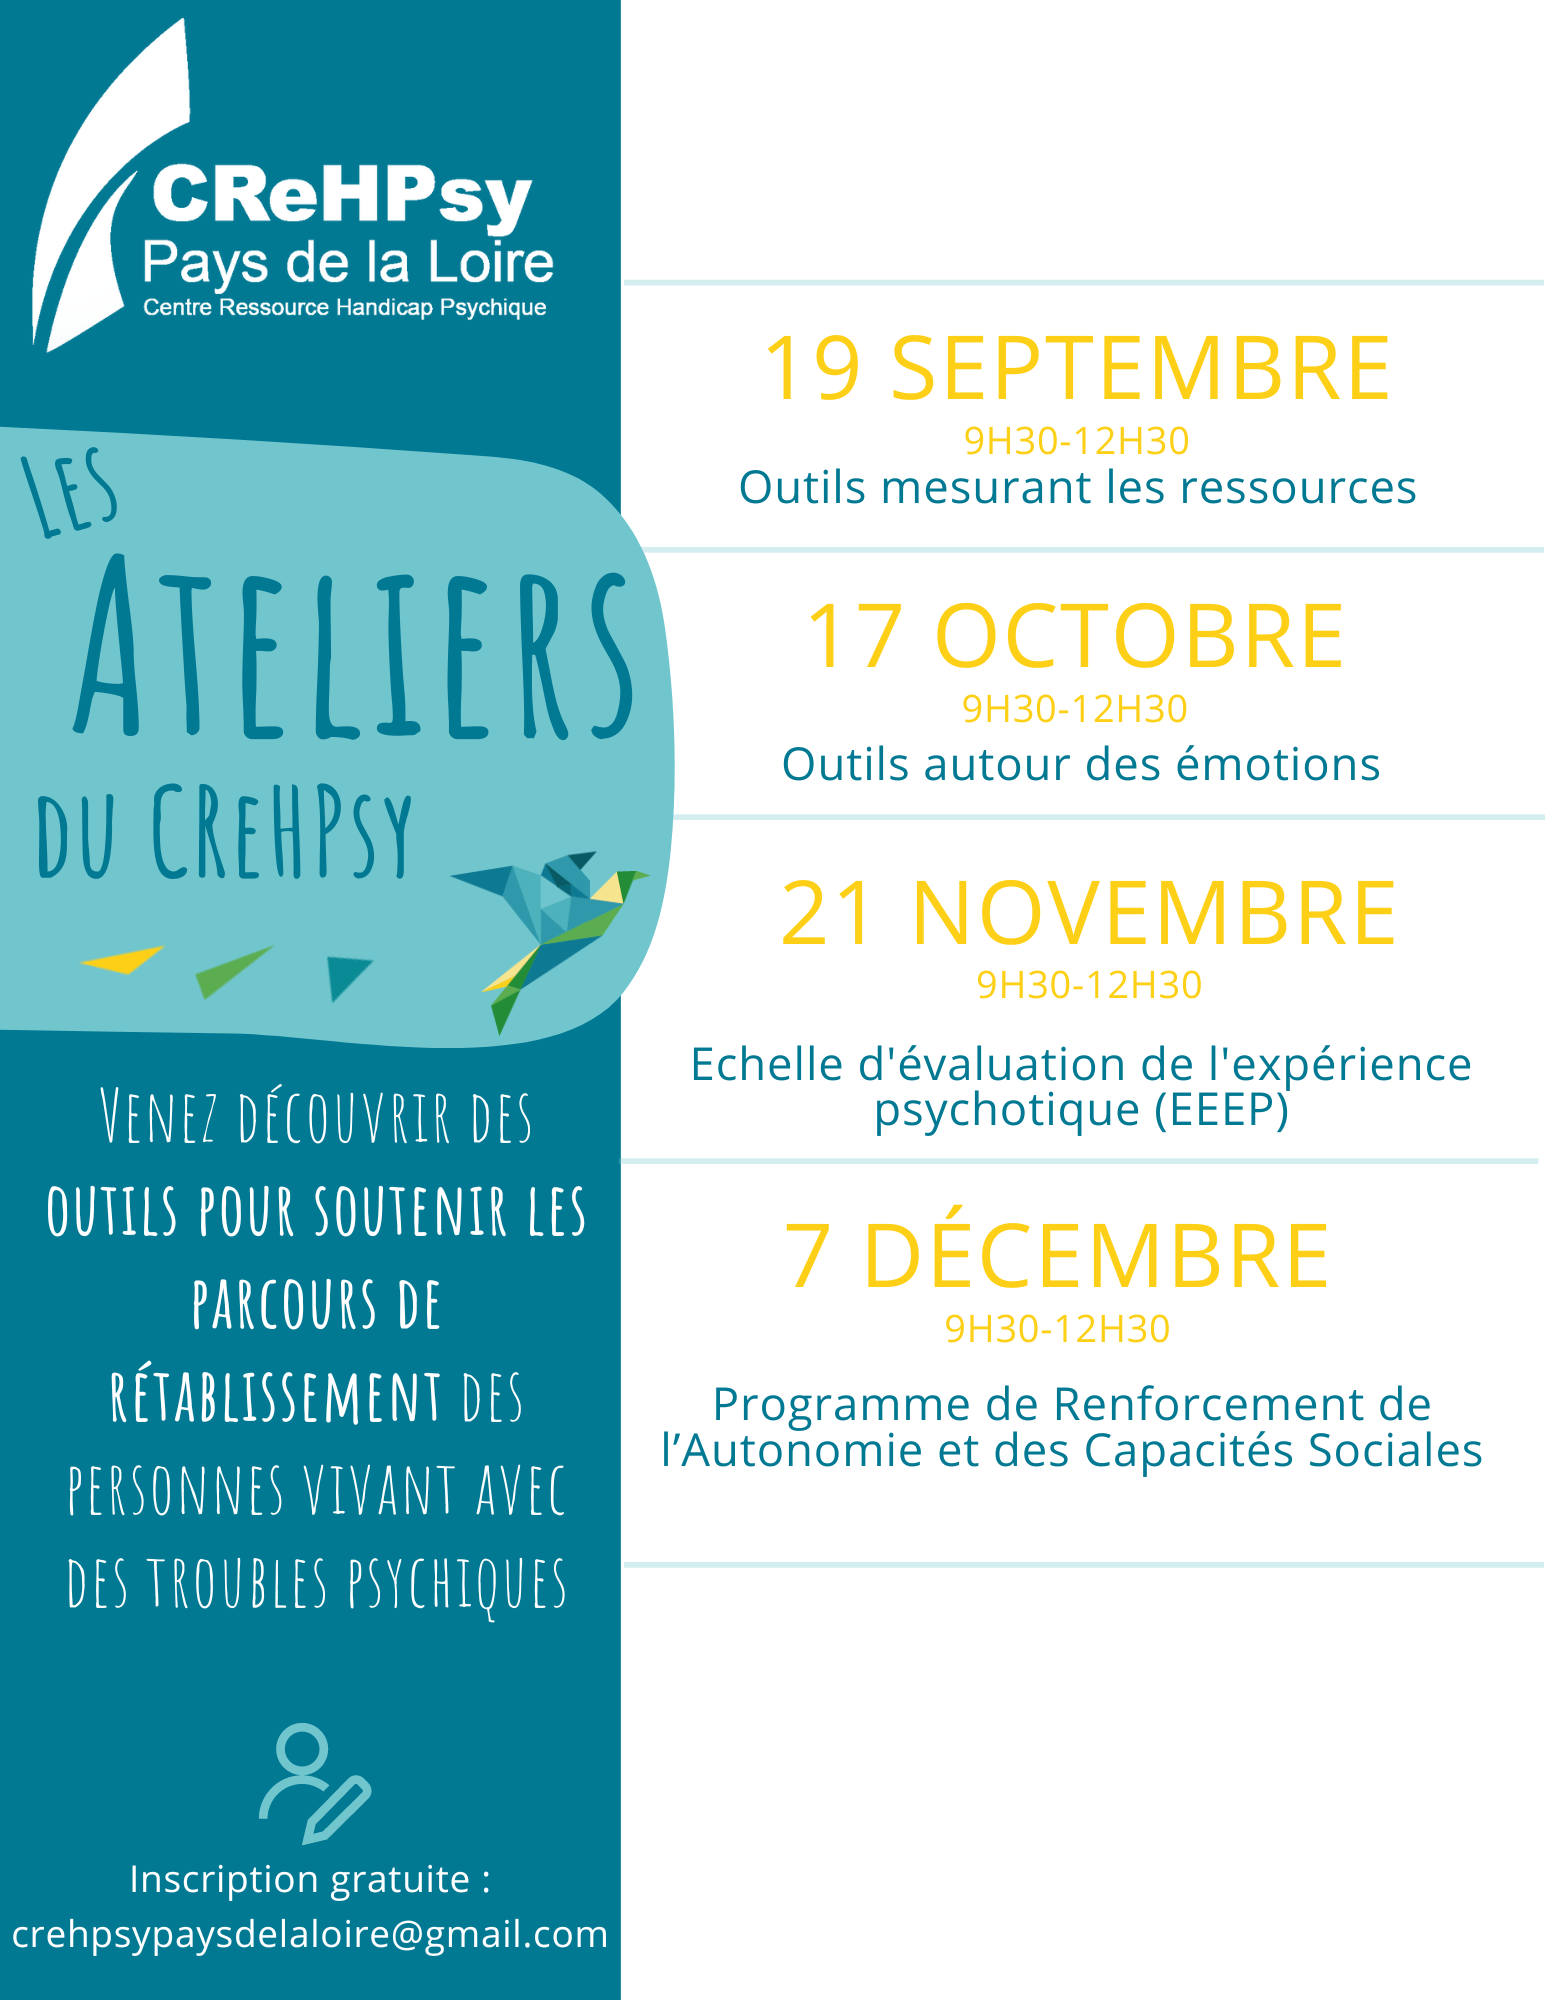 Les Ateliers du CReHPsy Pays de la Loire